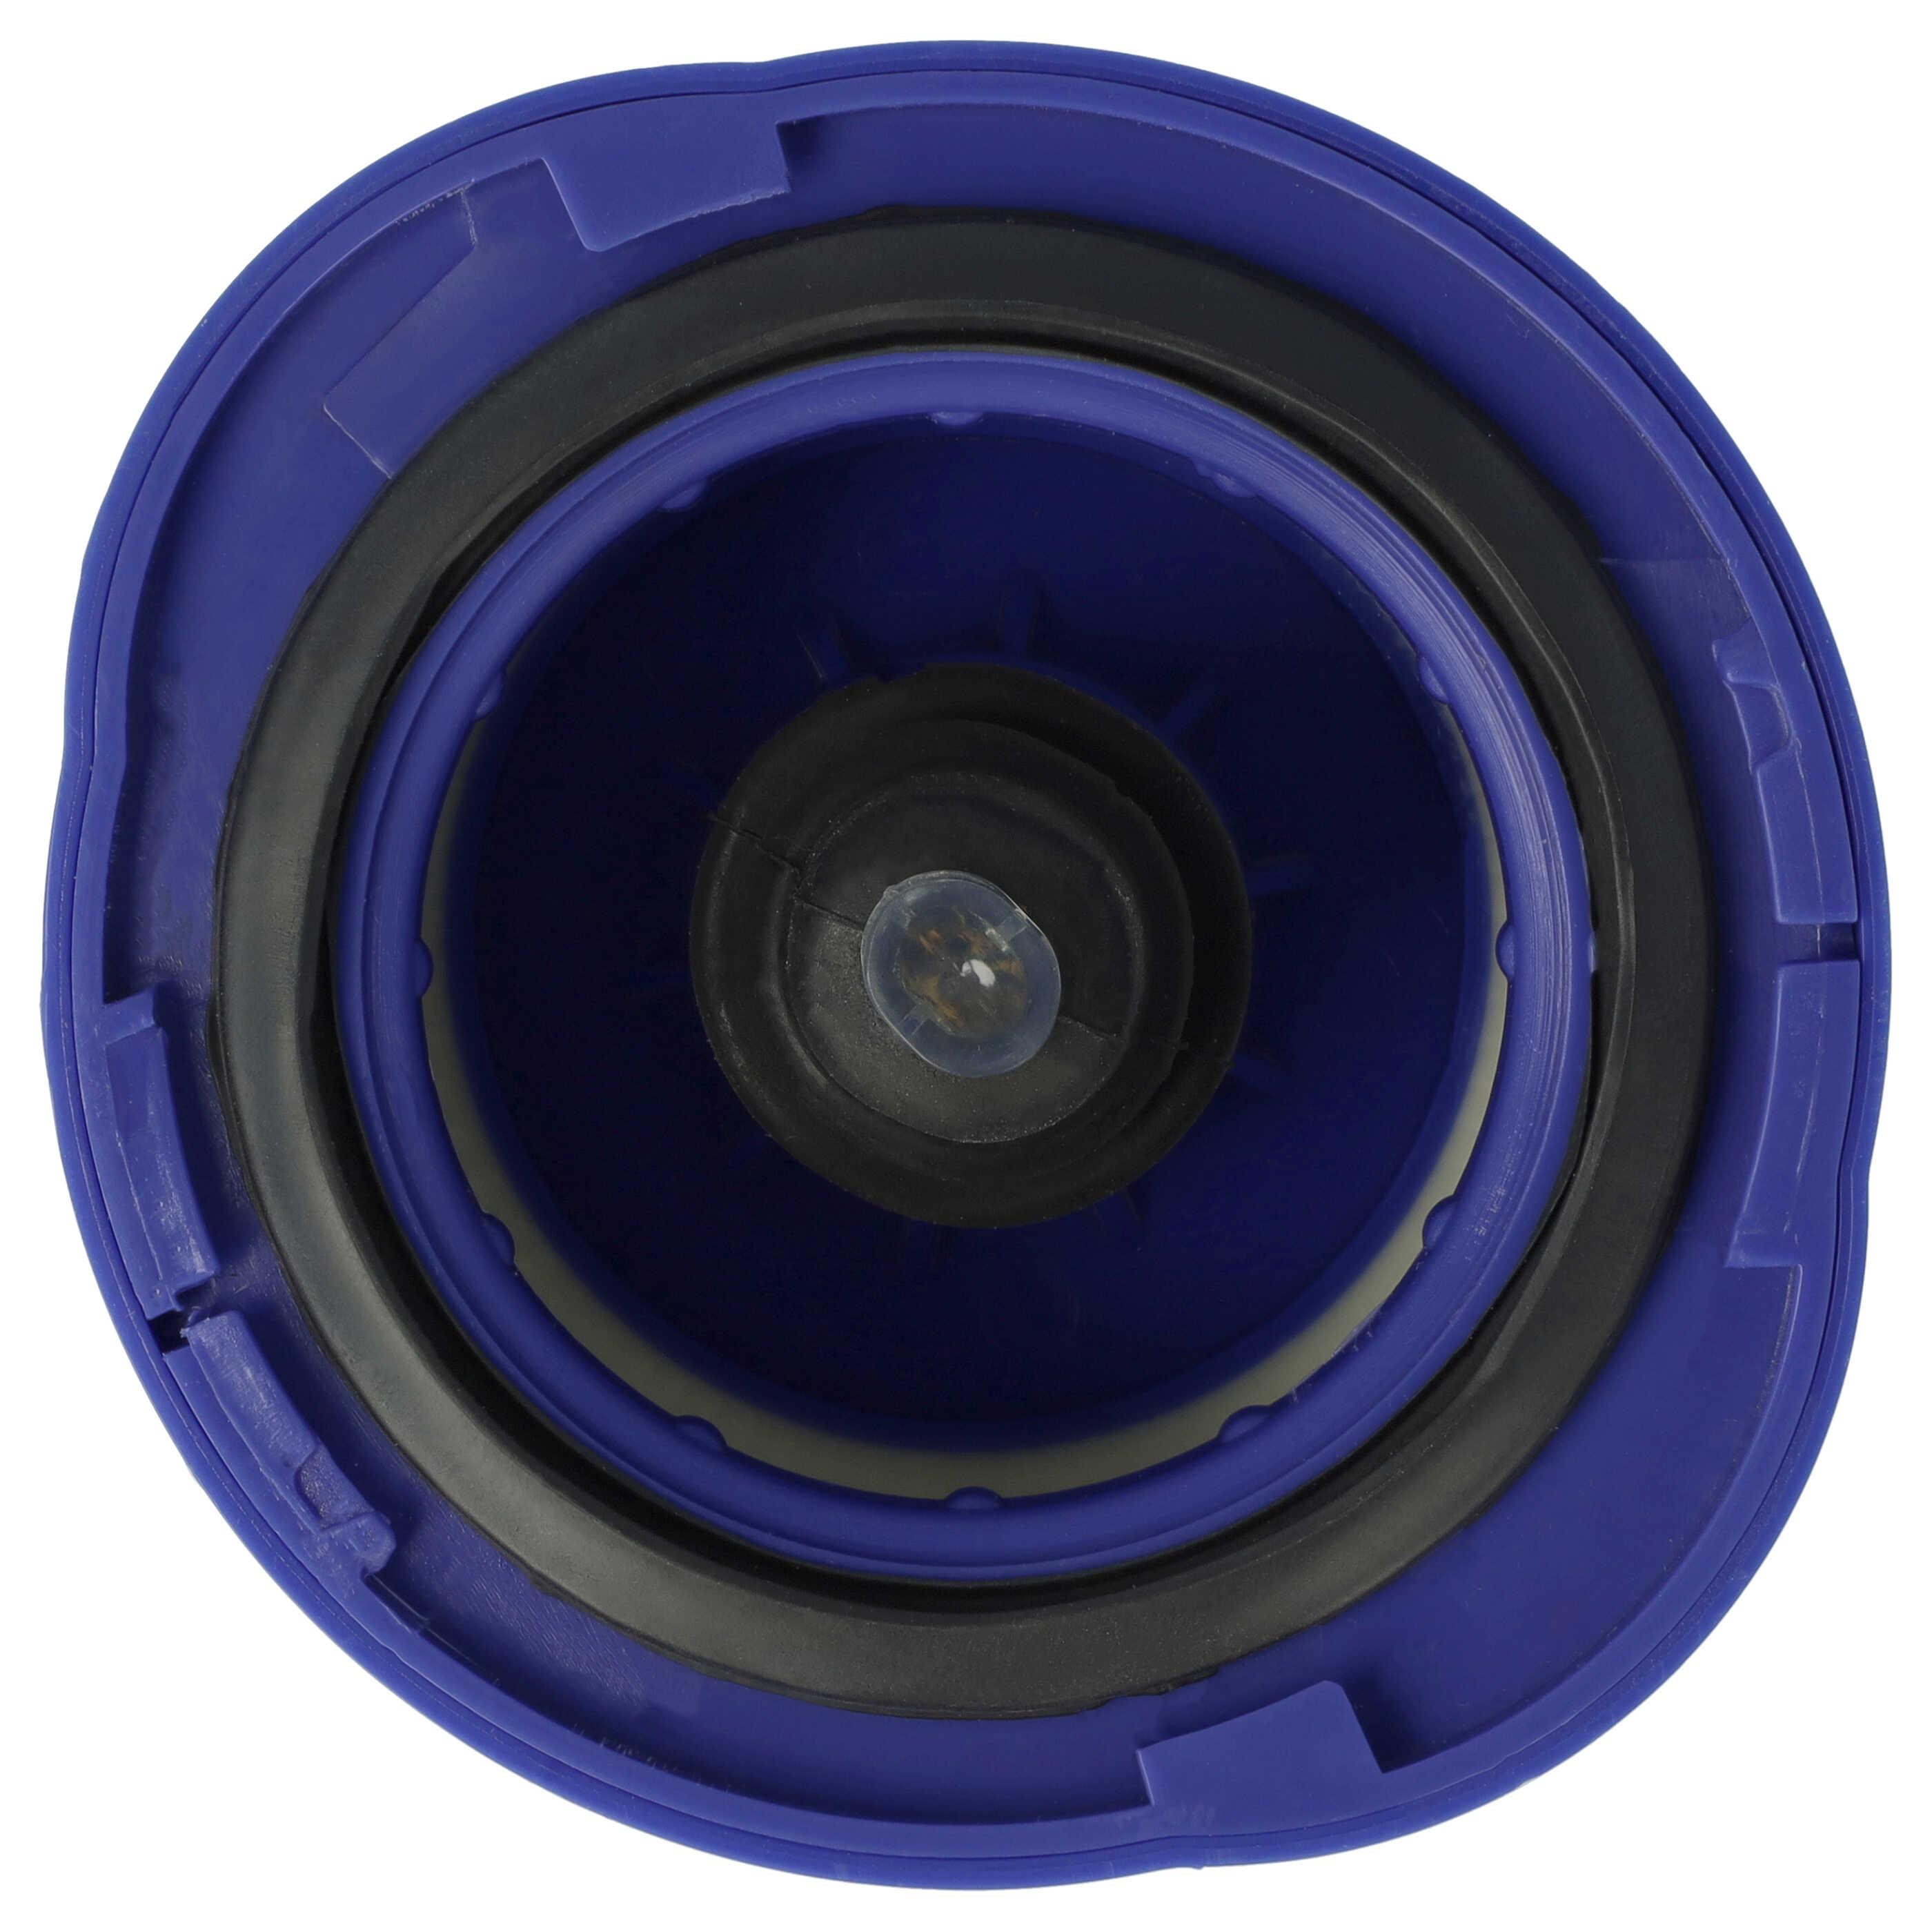 Filtro reemplaza Dyson 966741-01 para aspiradora - filtro salida del motor HEPA blanco / lila